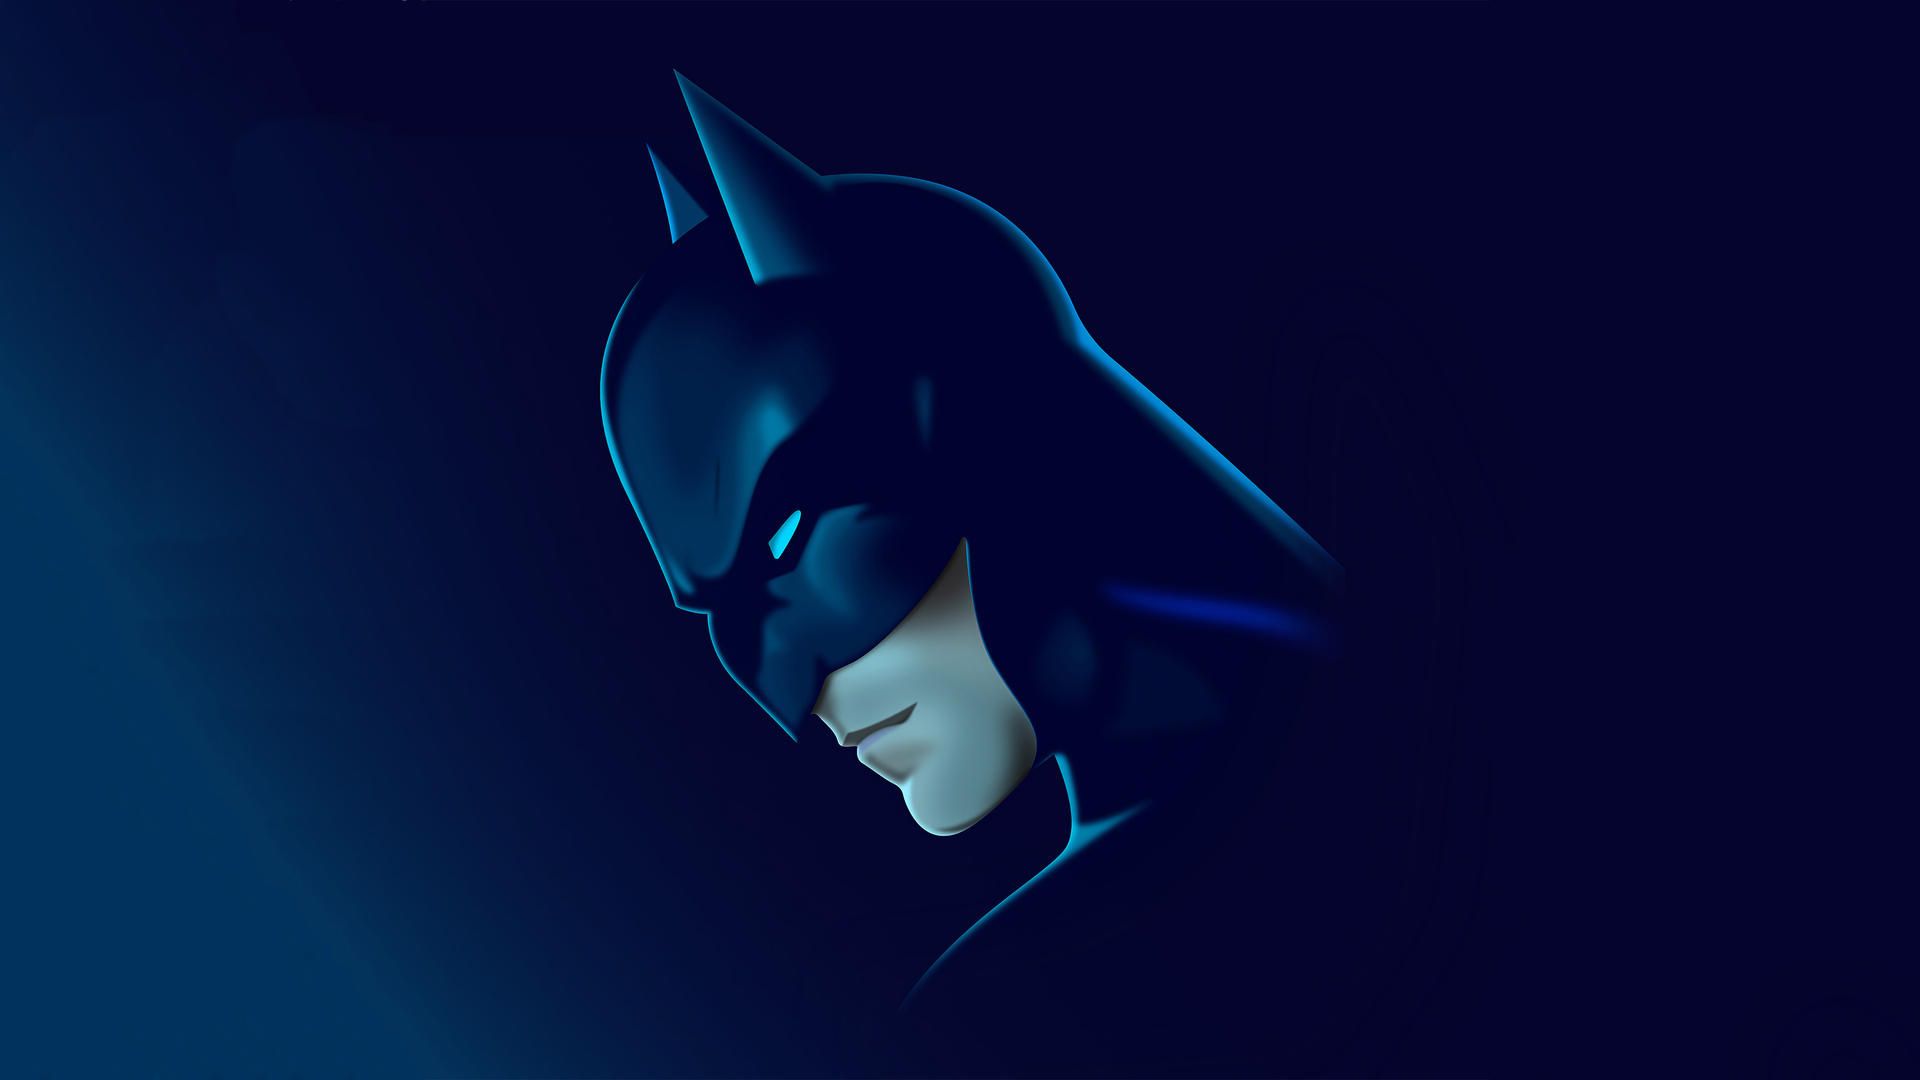 Blue Batman Wallpapers - Wallpaper Cave